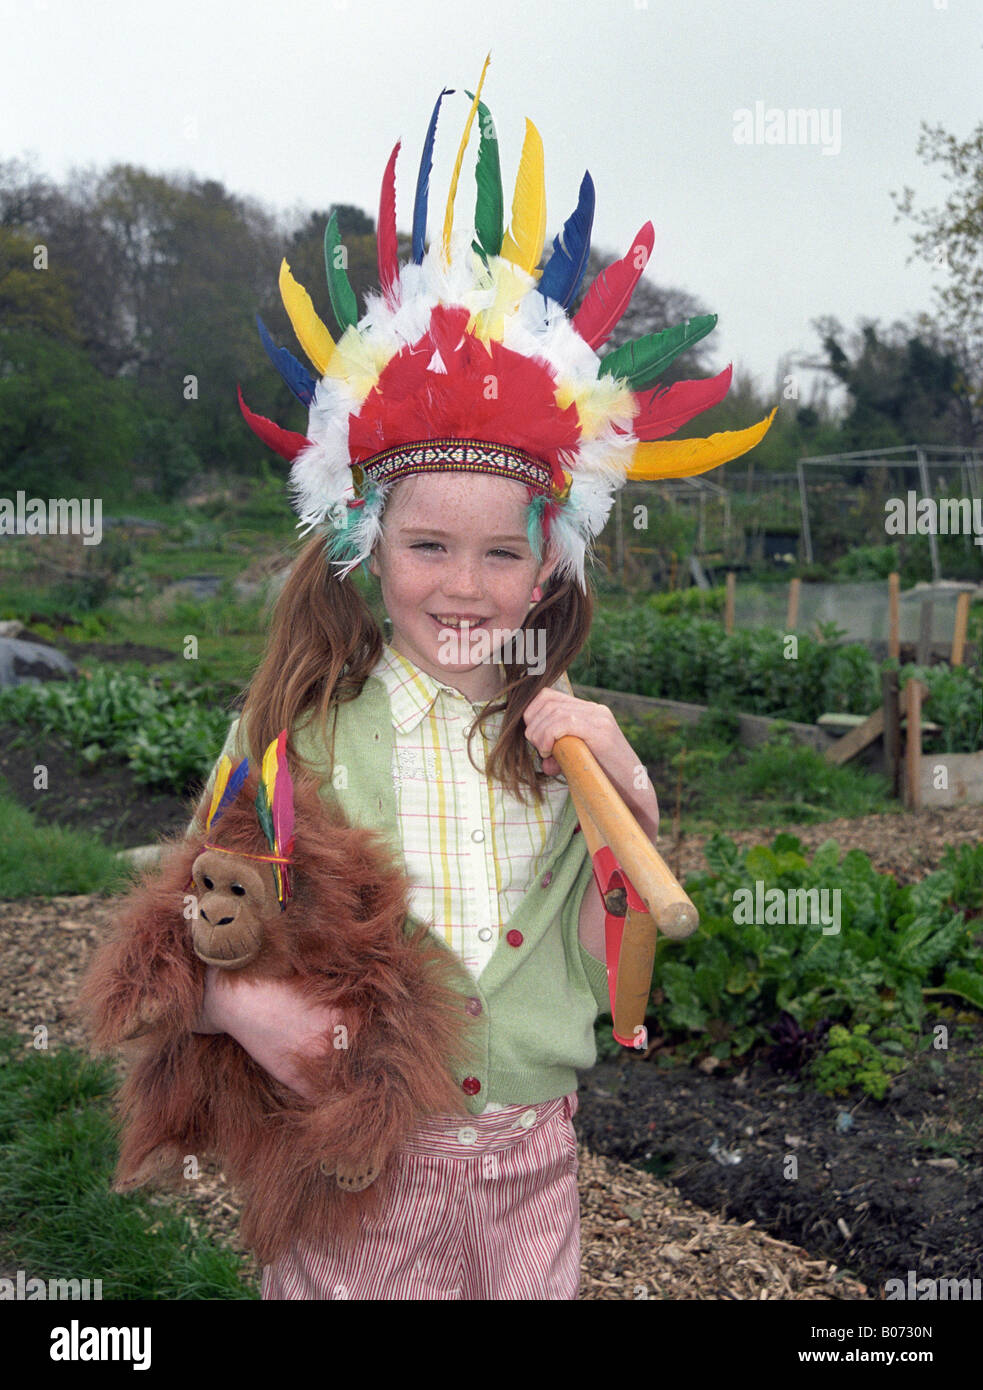 Petite fille dans les affectations avec les outils de jardinage Banque D'Images